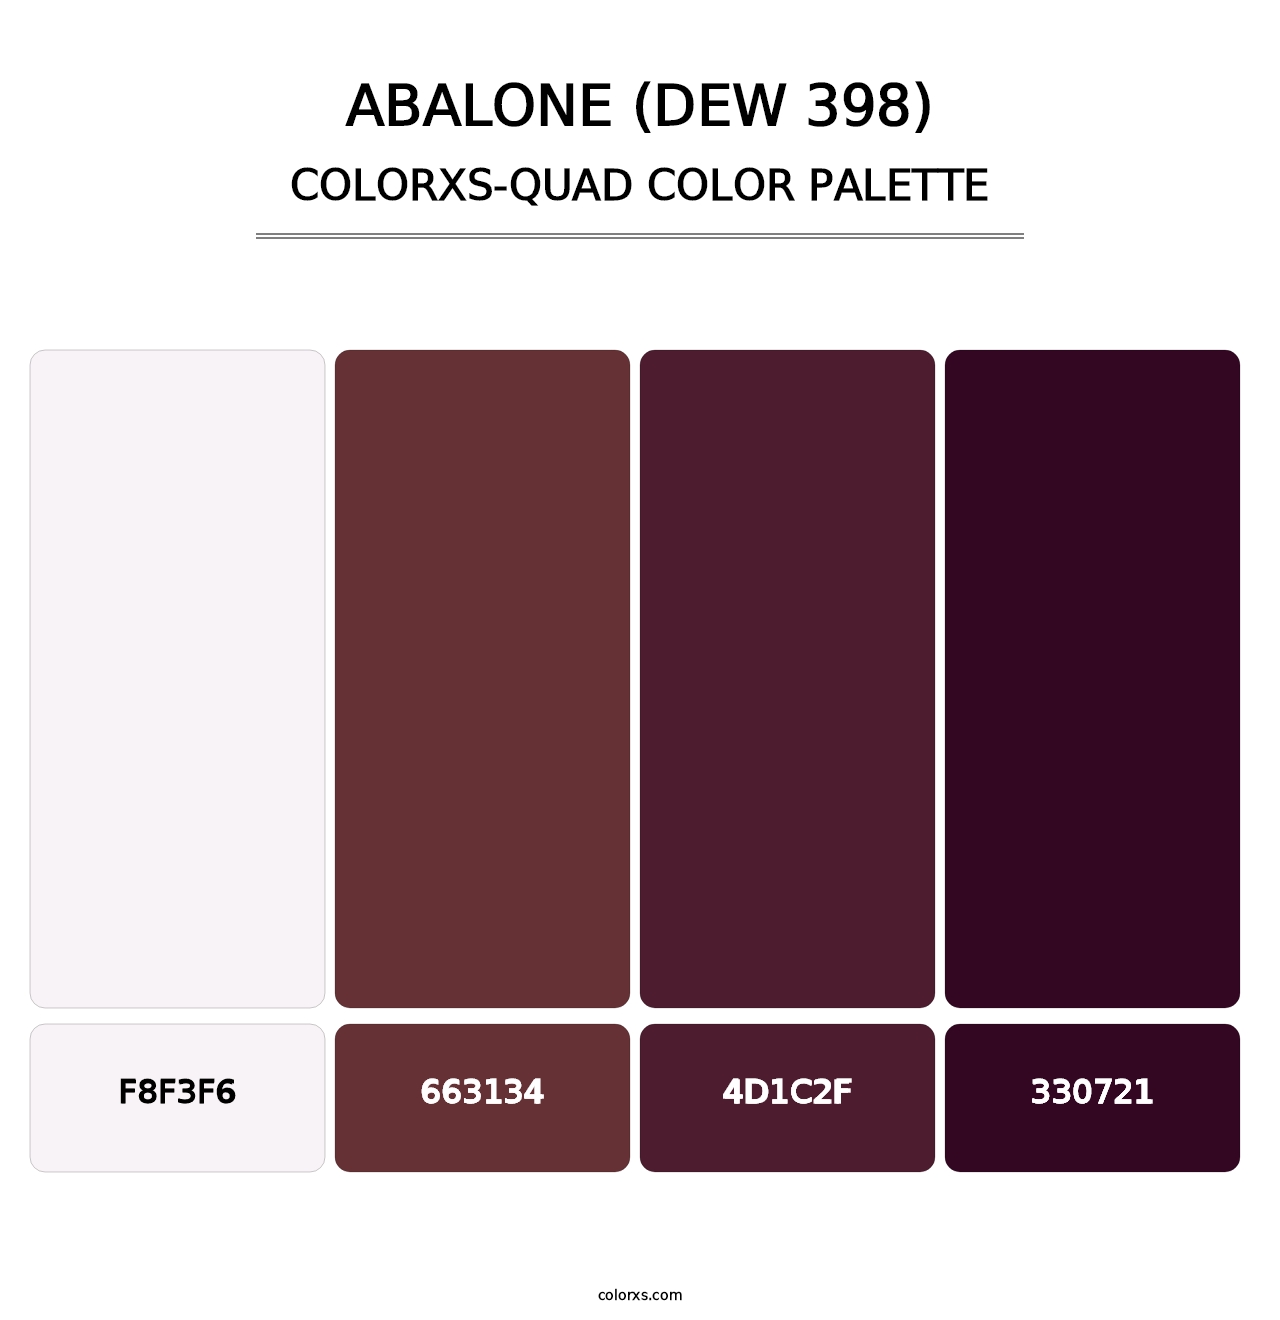 Abalone (DEW 398) - Colorxs Quad Palette